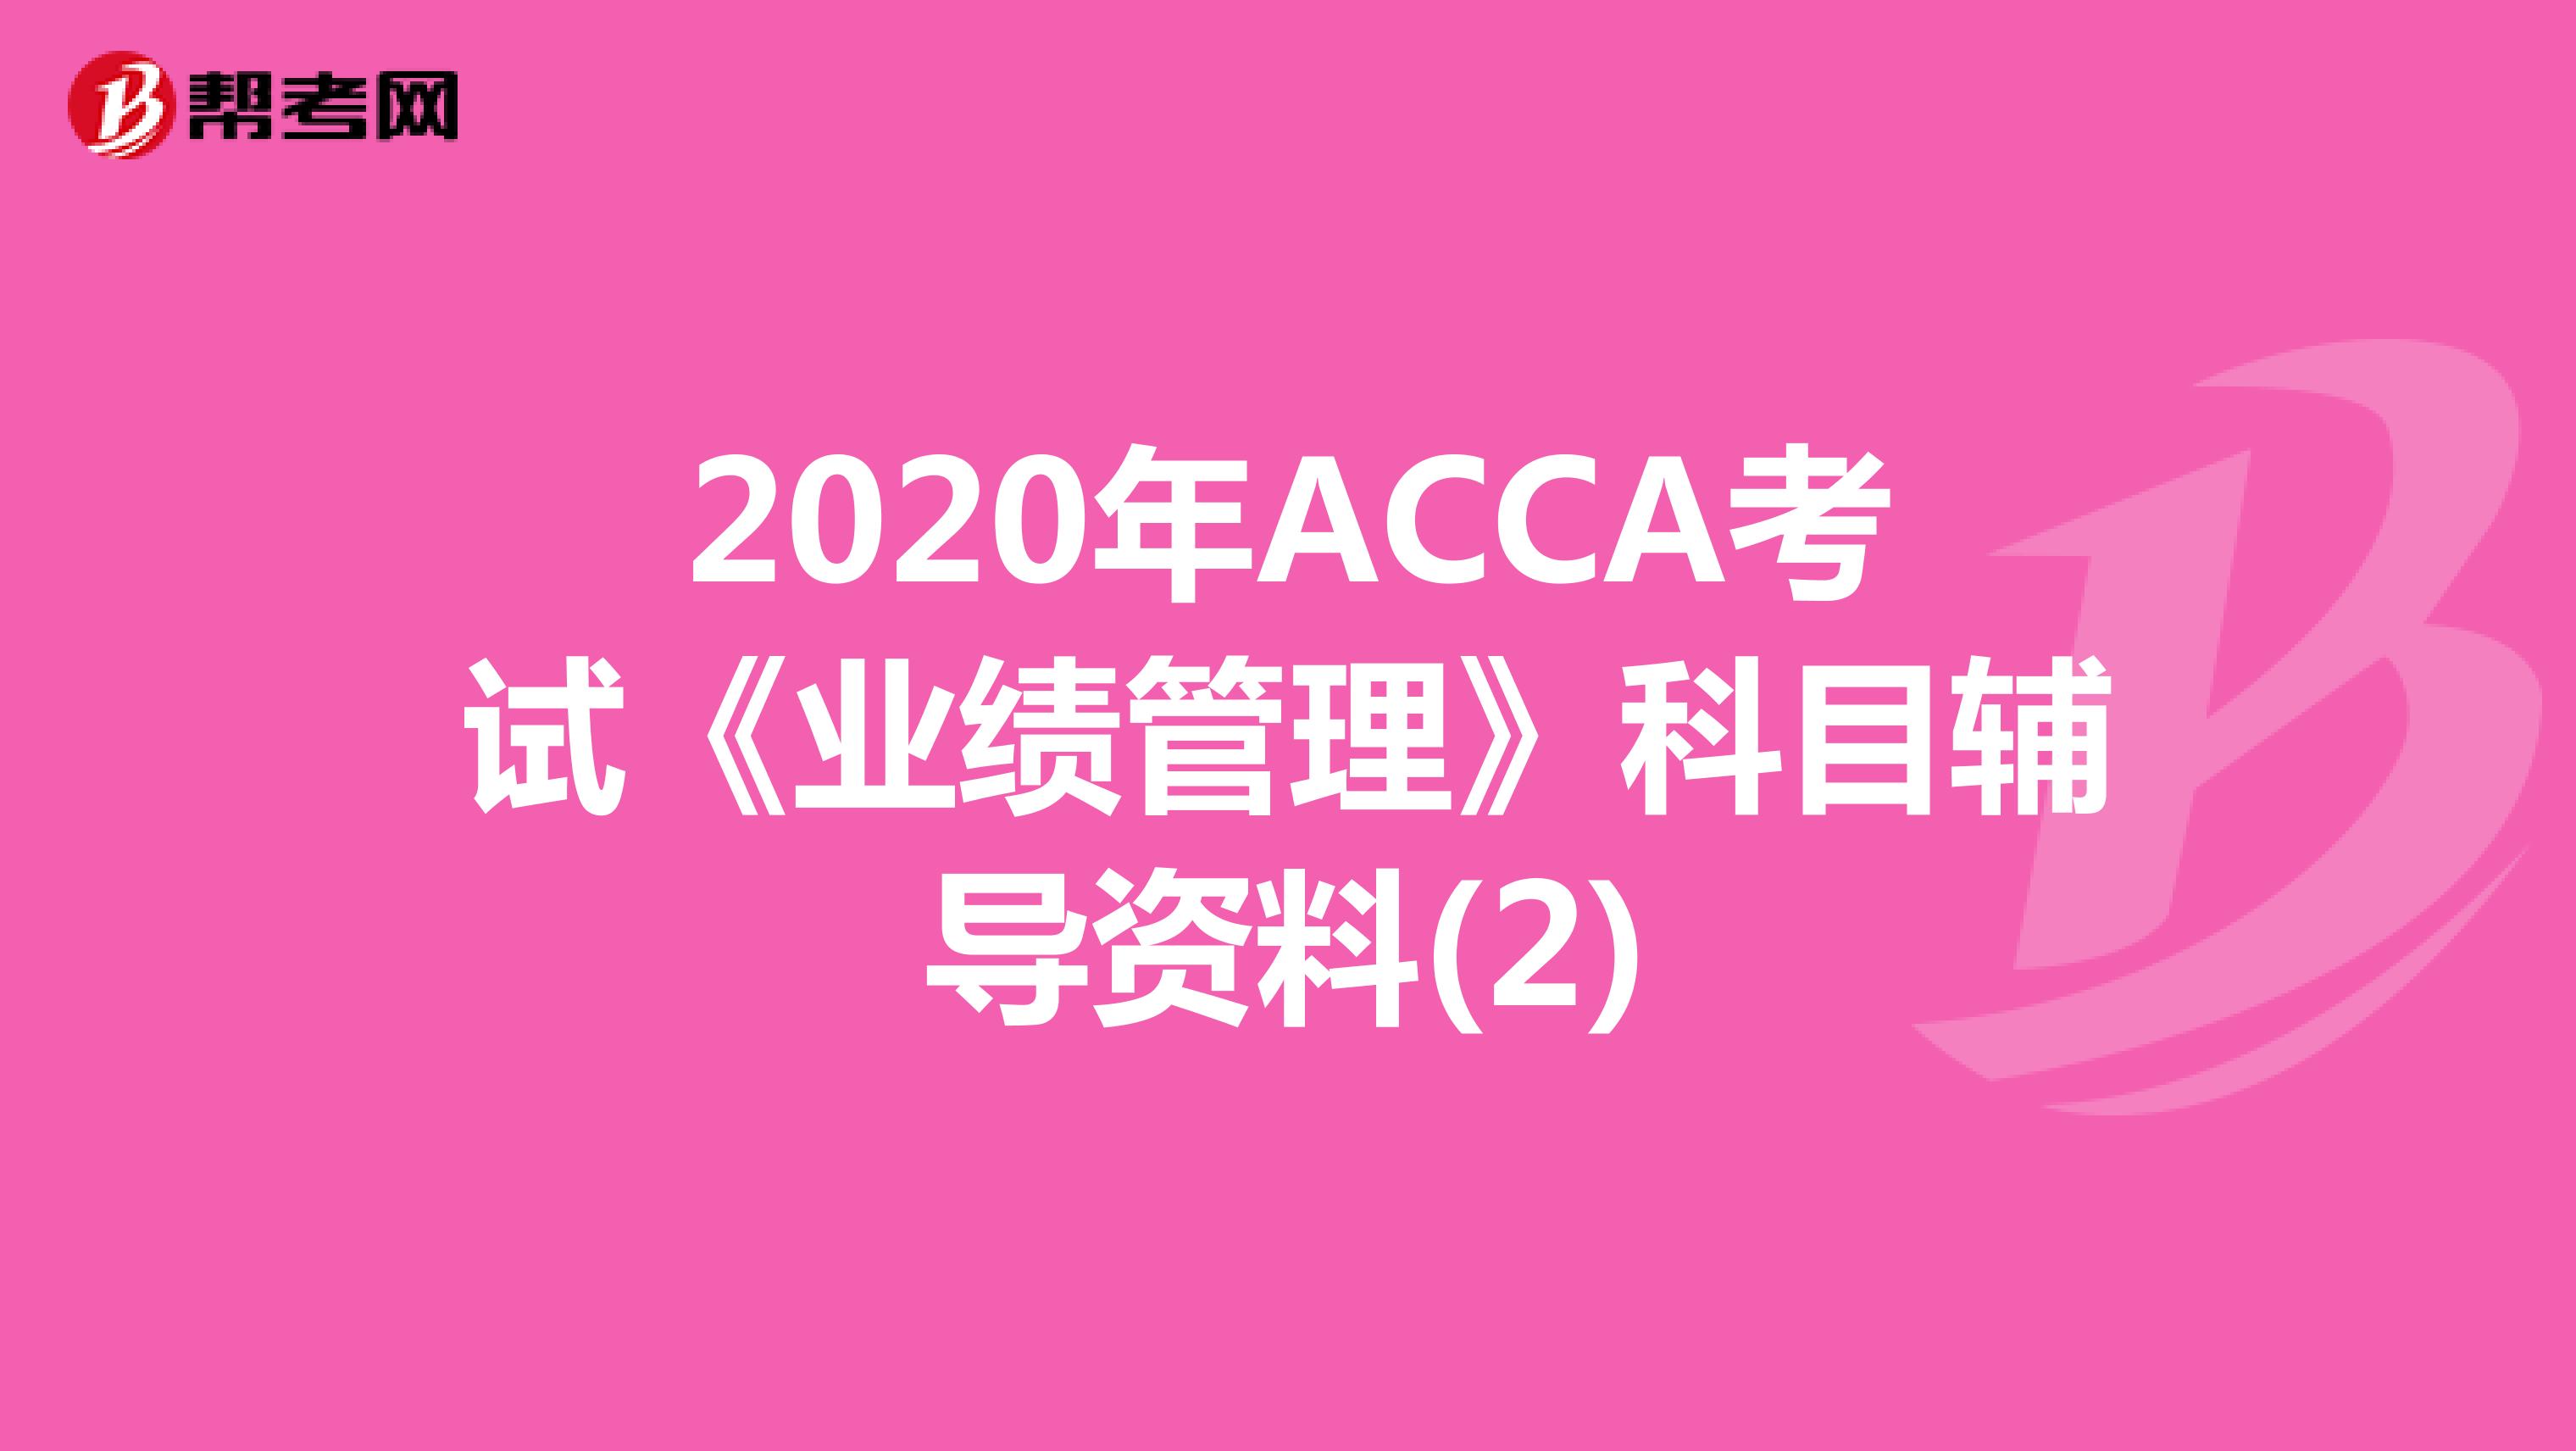 2020年ACCA考试《业绩管理》科目辅导资料(2)